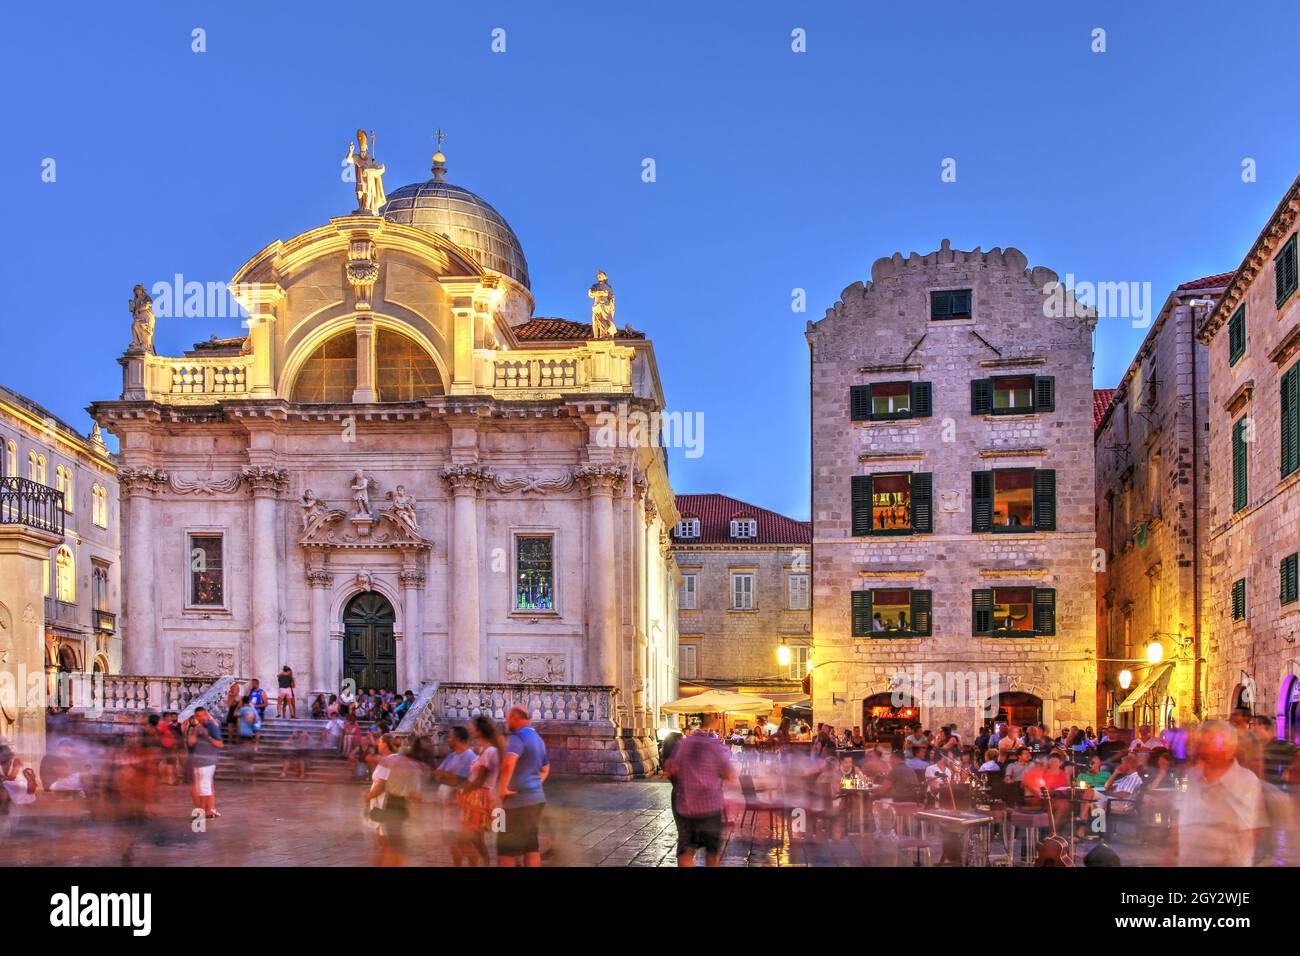 Scena serale con la Chiesa di San Biagio a Dubrovnik, Croazia lungo lo Stradun - la strada principale della città murata. Foto Stock